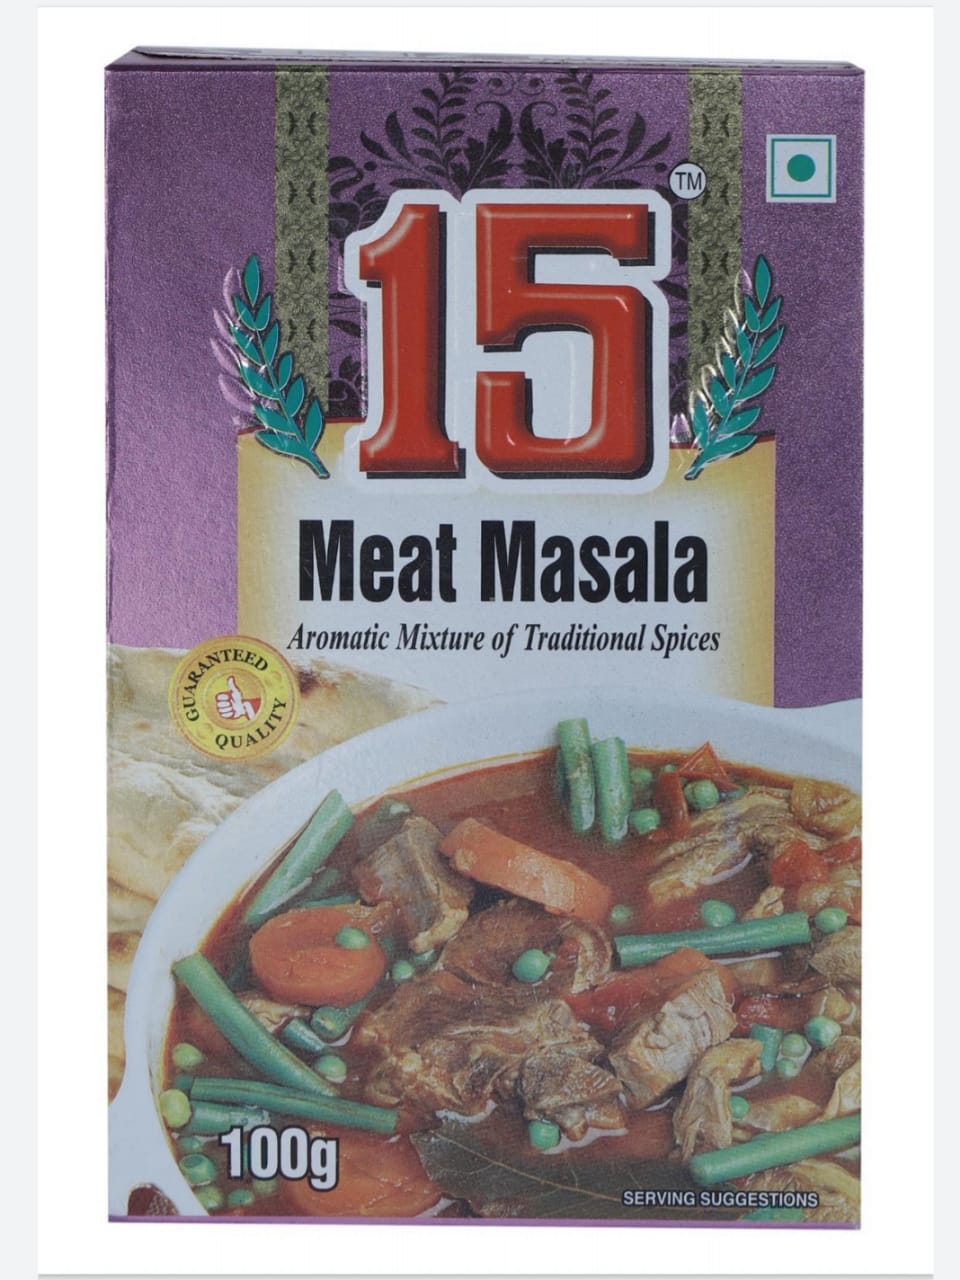 Meat Masala